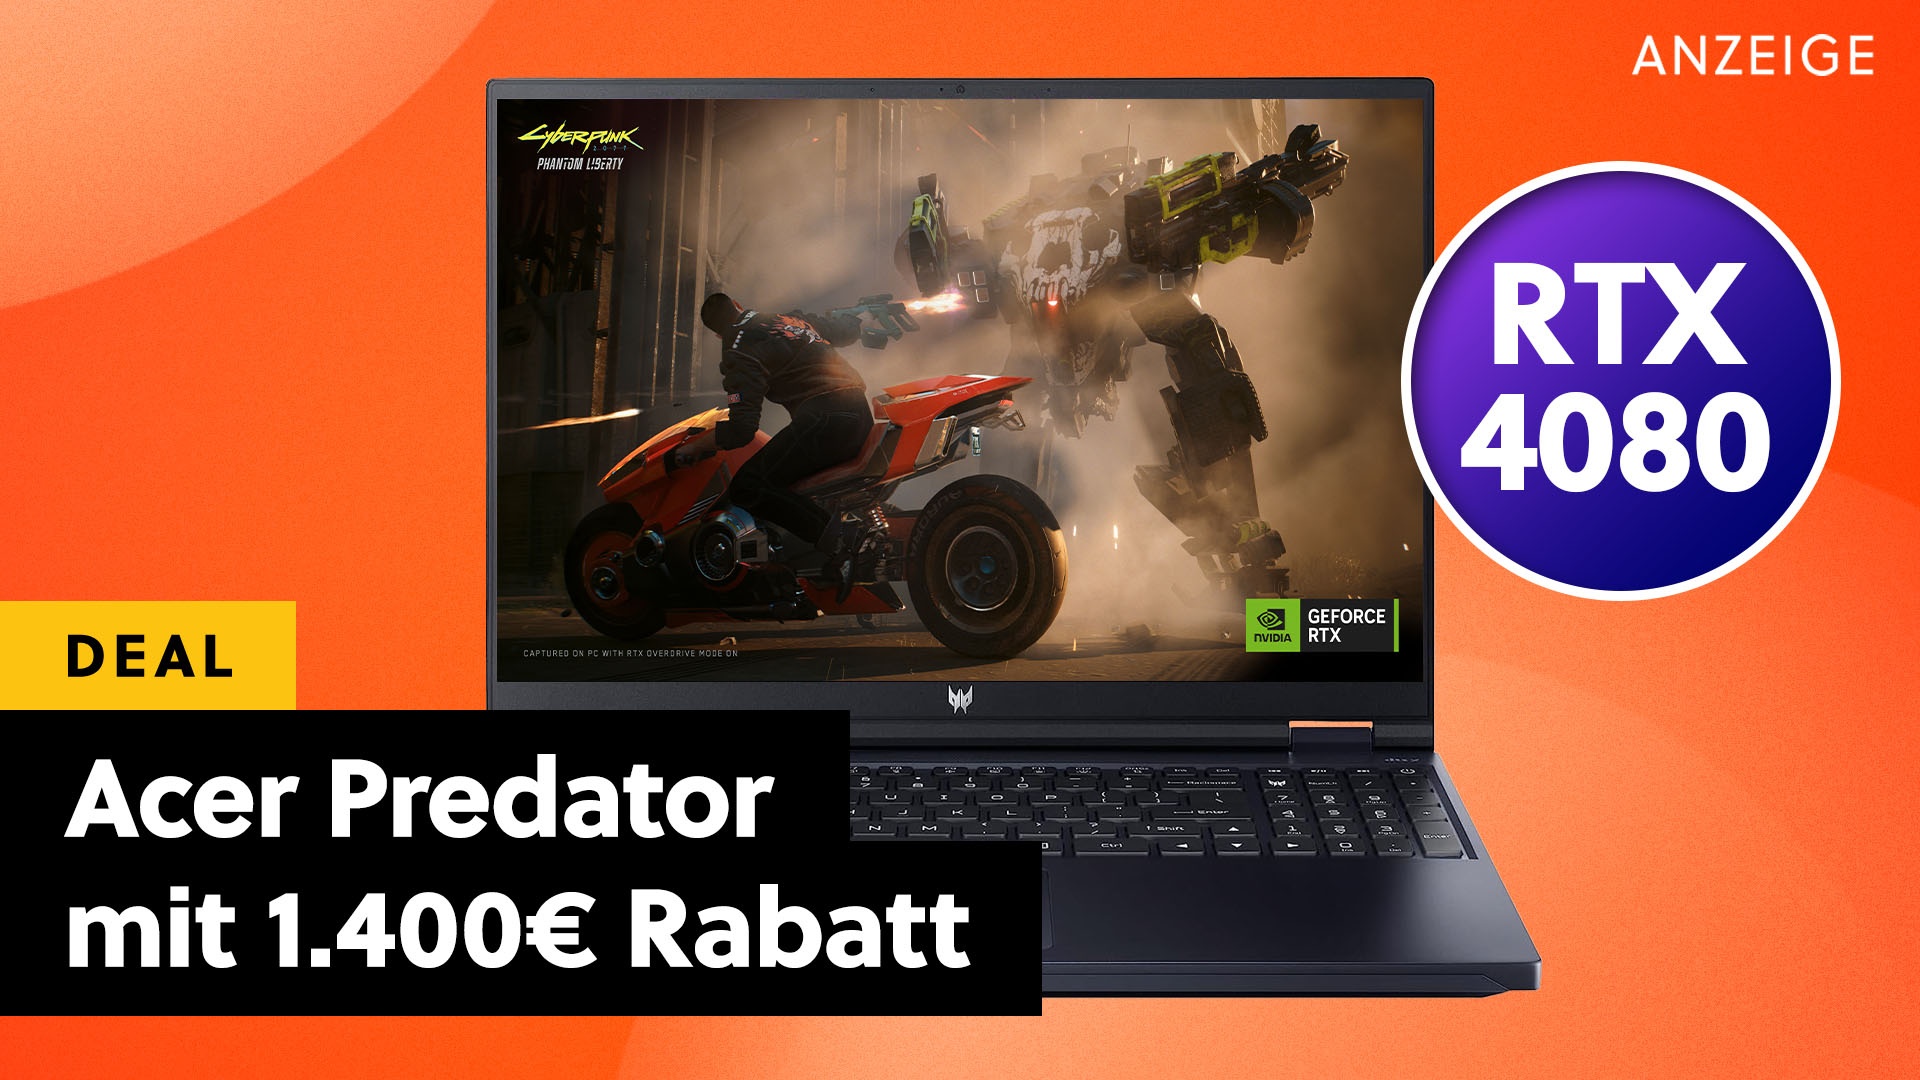 Acer Predator Gaming-Laptop mit RTX 4080 und 1.400€ Rabatt rauscht locker am bisherigen Tiefstpreis vorbei